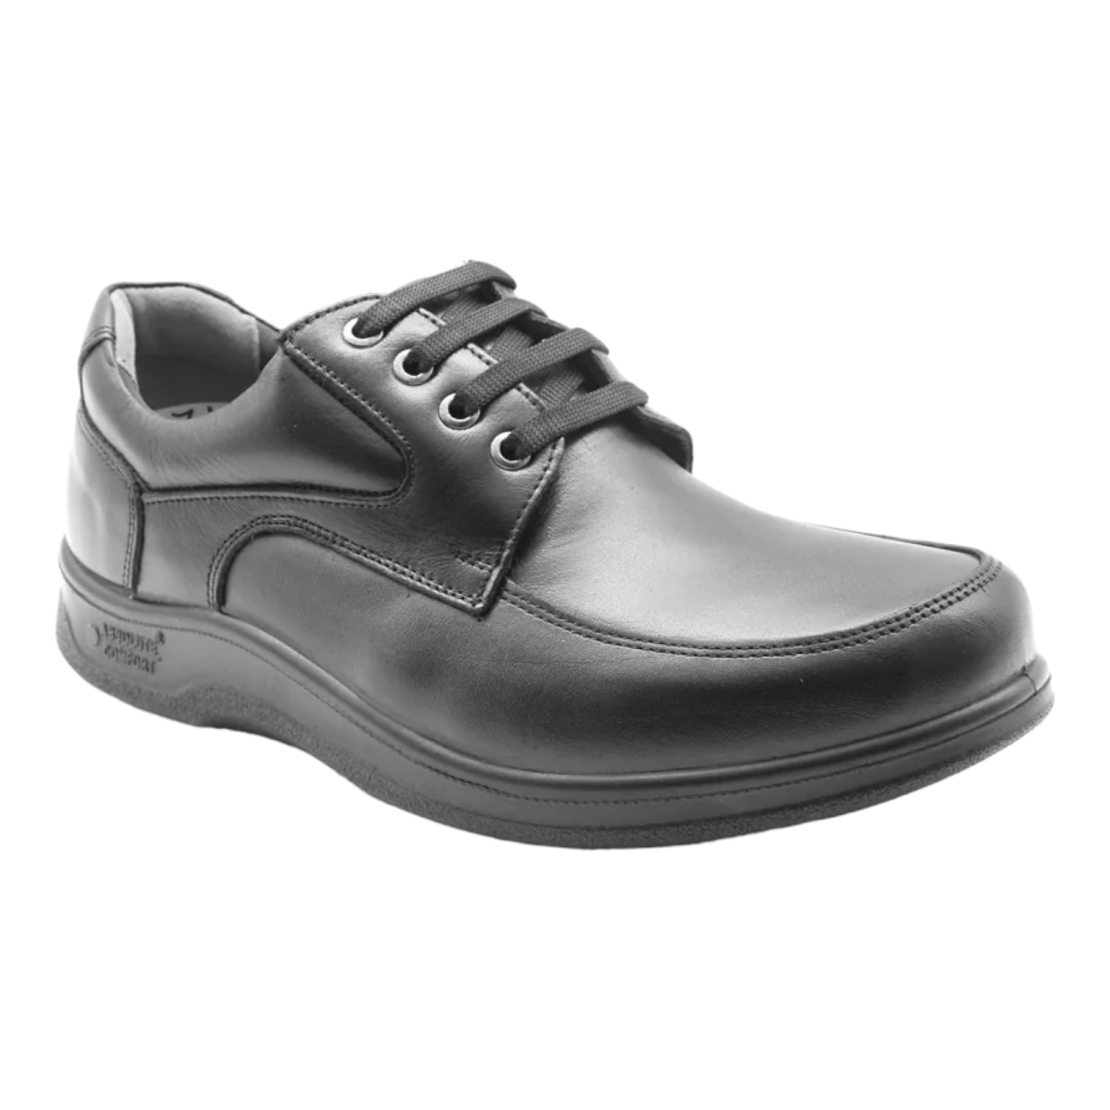 Absolute Comfort נעליים רחבות לגברים דגם 7411